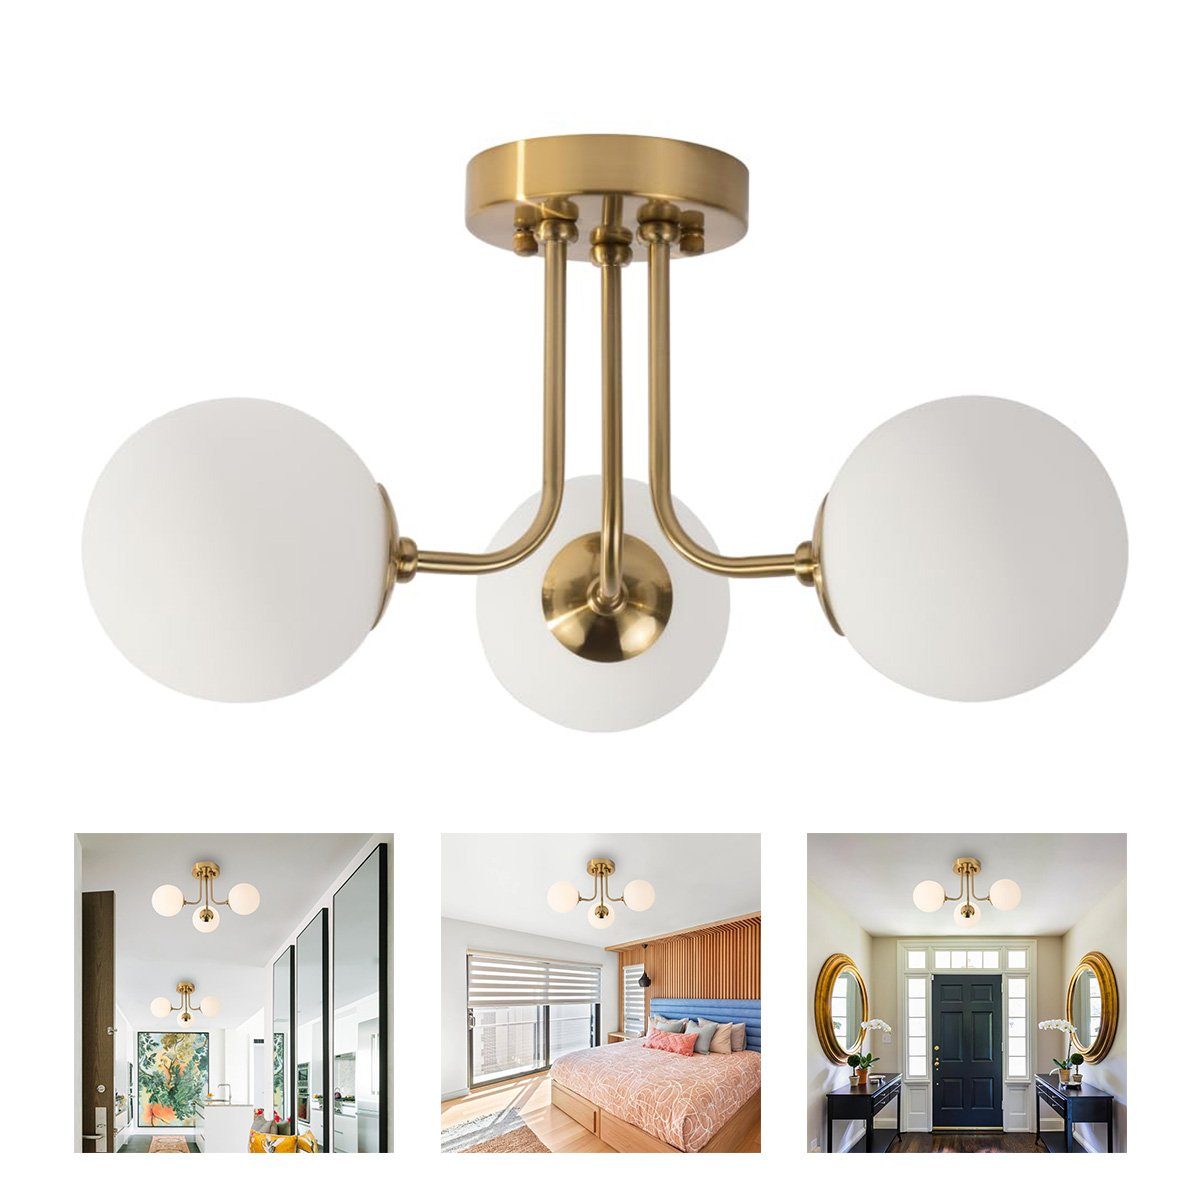 10-15 Welikera Raum,E27-Lampenfassung Kugelförmig Gold 3-Kopf-Deckenlampe Deckenleuchte für m²